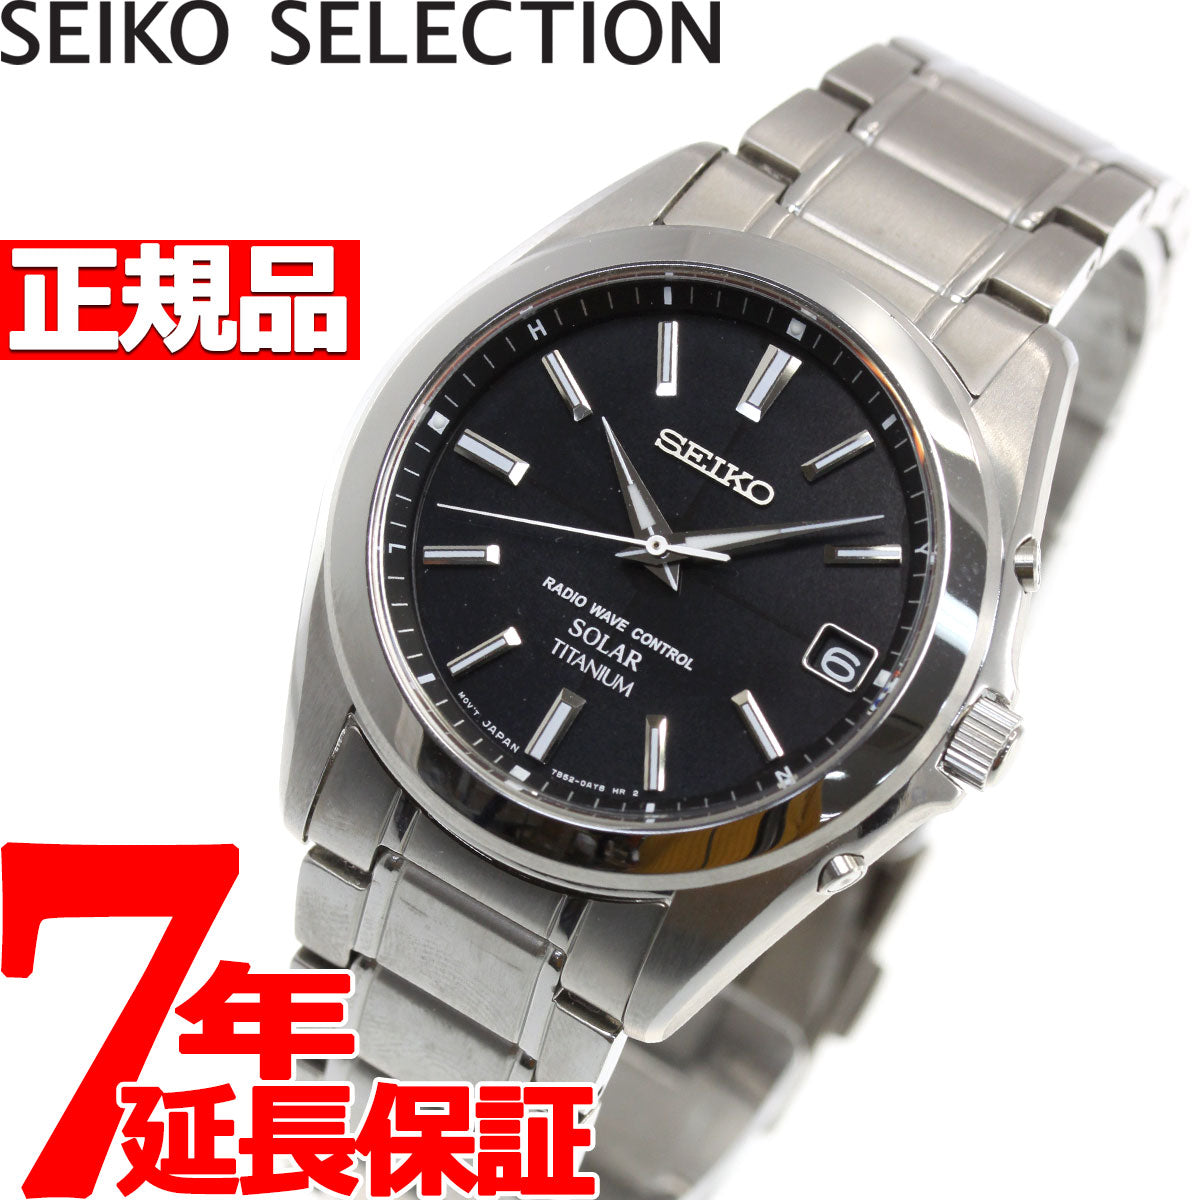 セイコー スピリット SEIKO SPIRIT 電波 ソーラー 電波時計 腕時計 メンズ SBTM217【セイコー スピリット】【正規品】【送料無料】